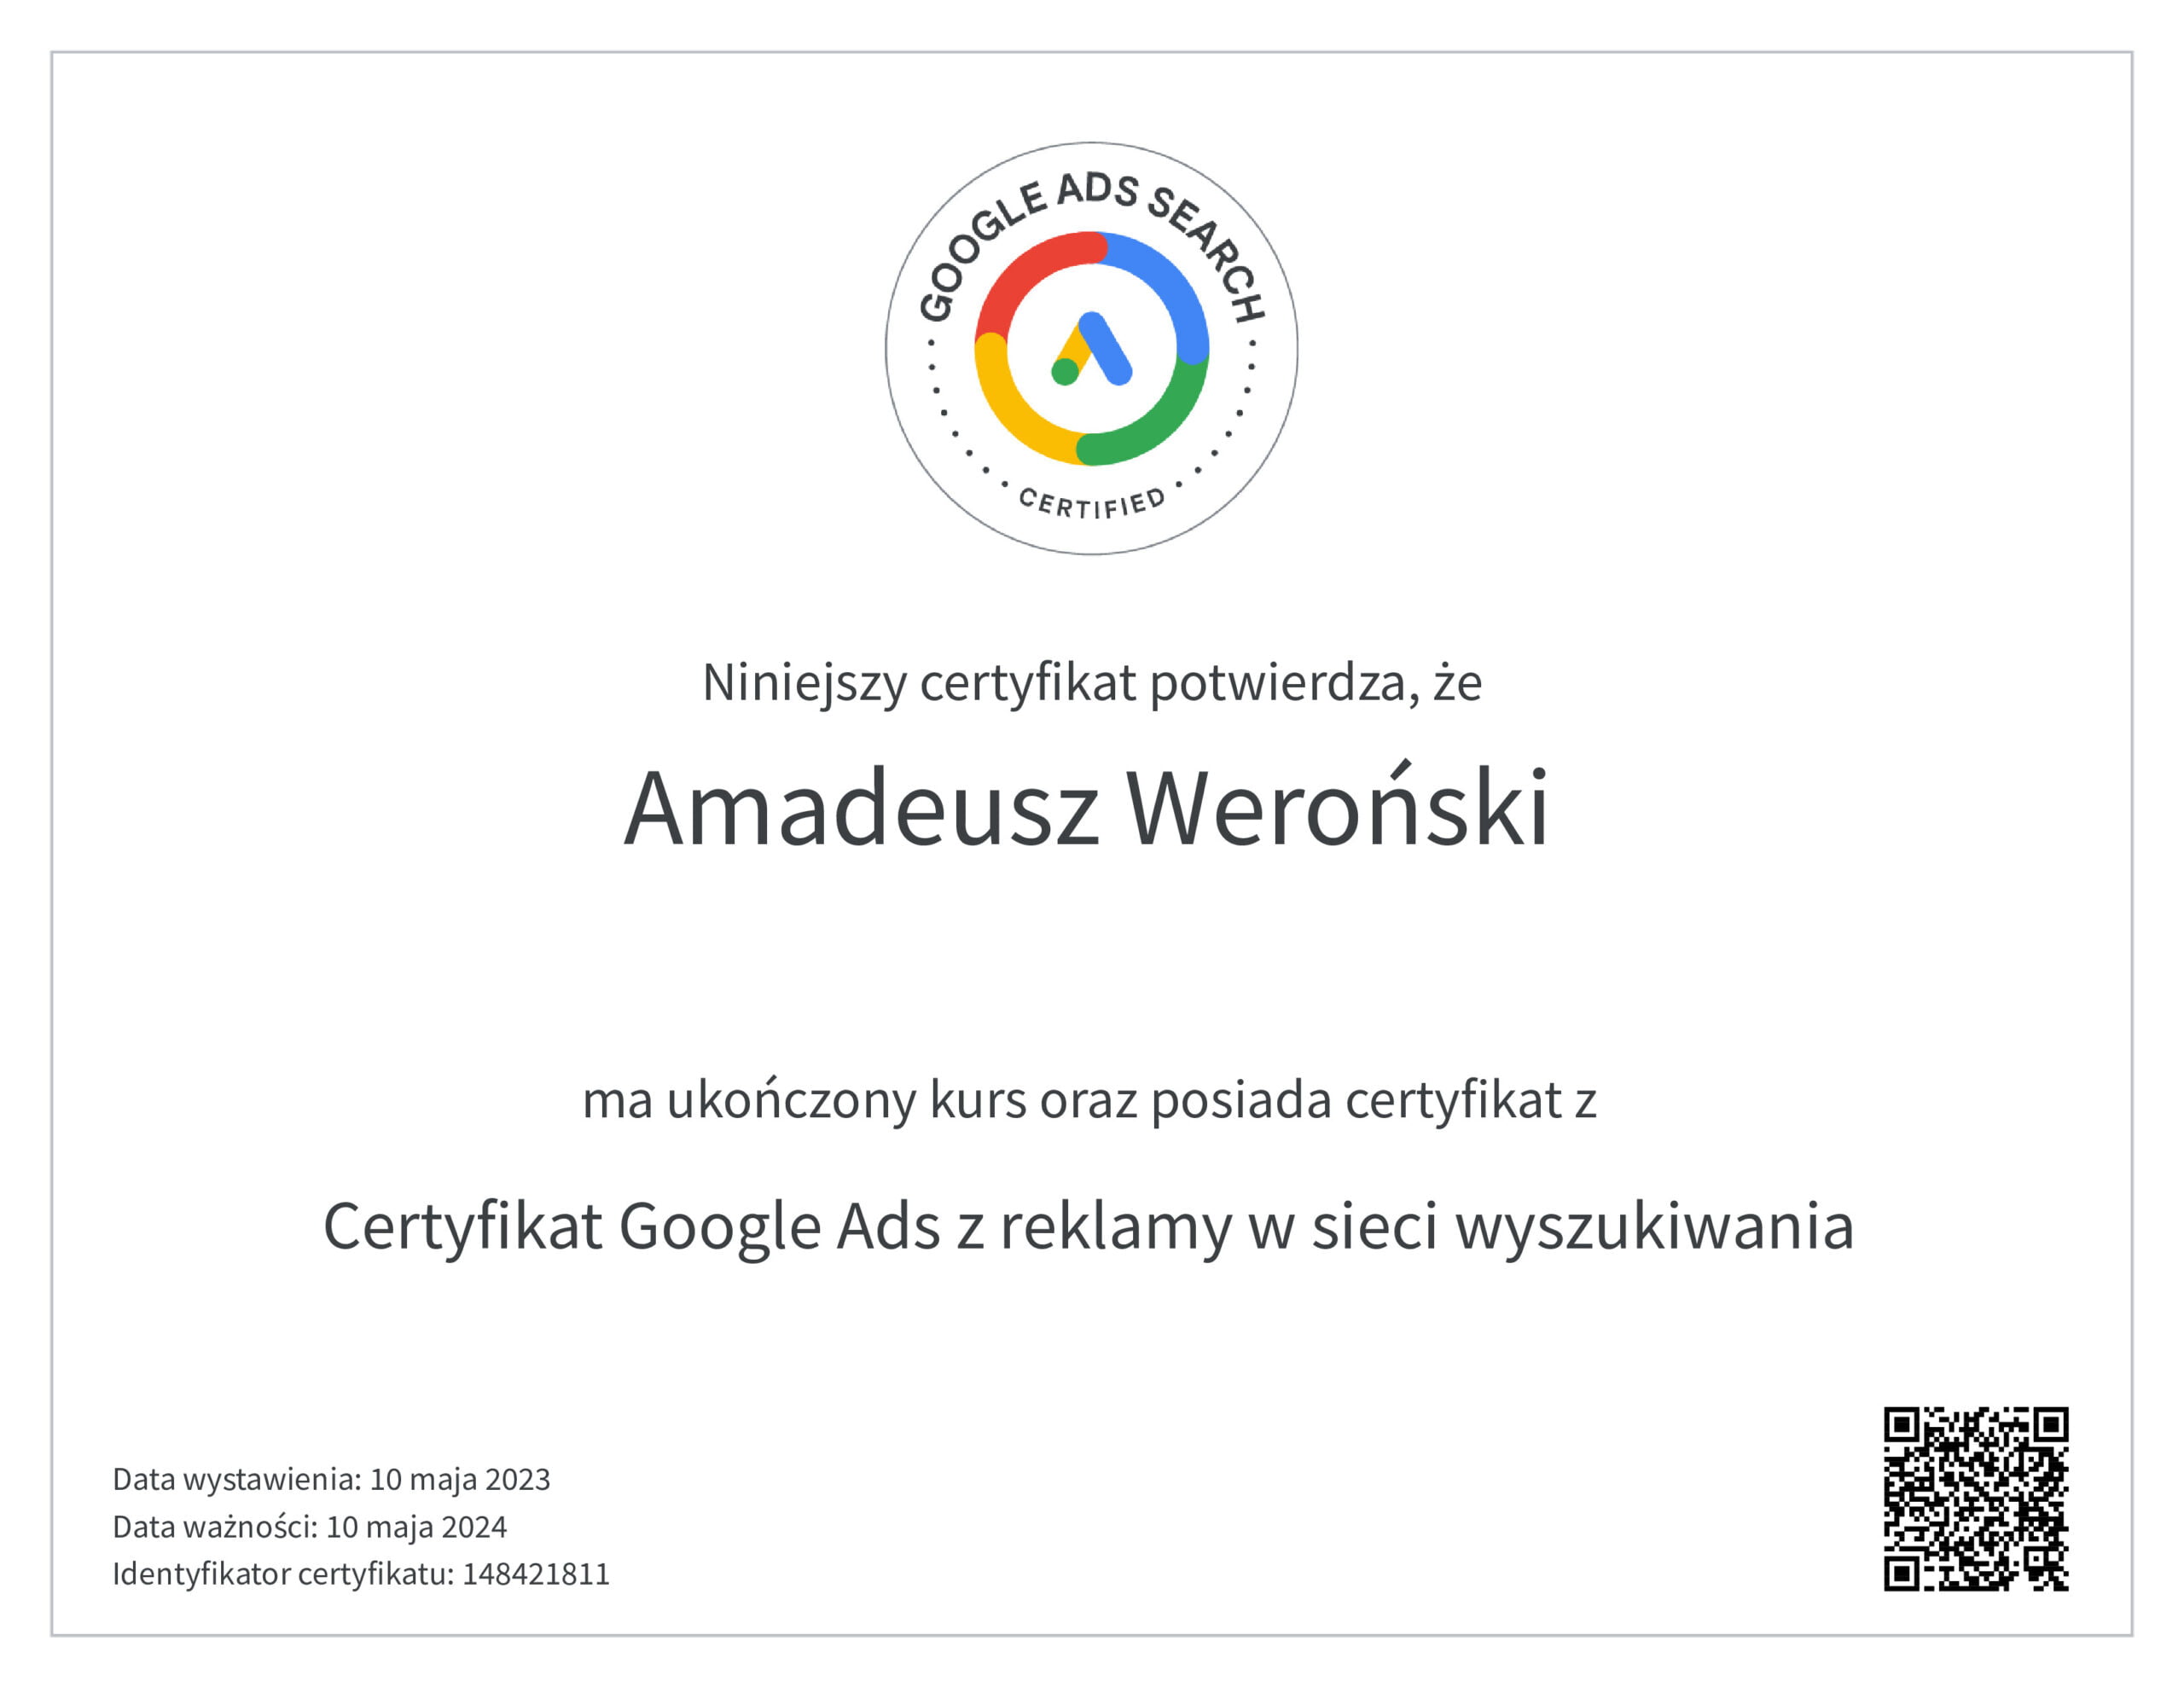 amadeusz weroński certyfikat google ads z reklamy w sieci wyszukiwania